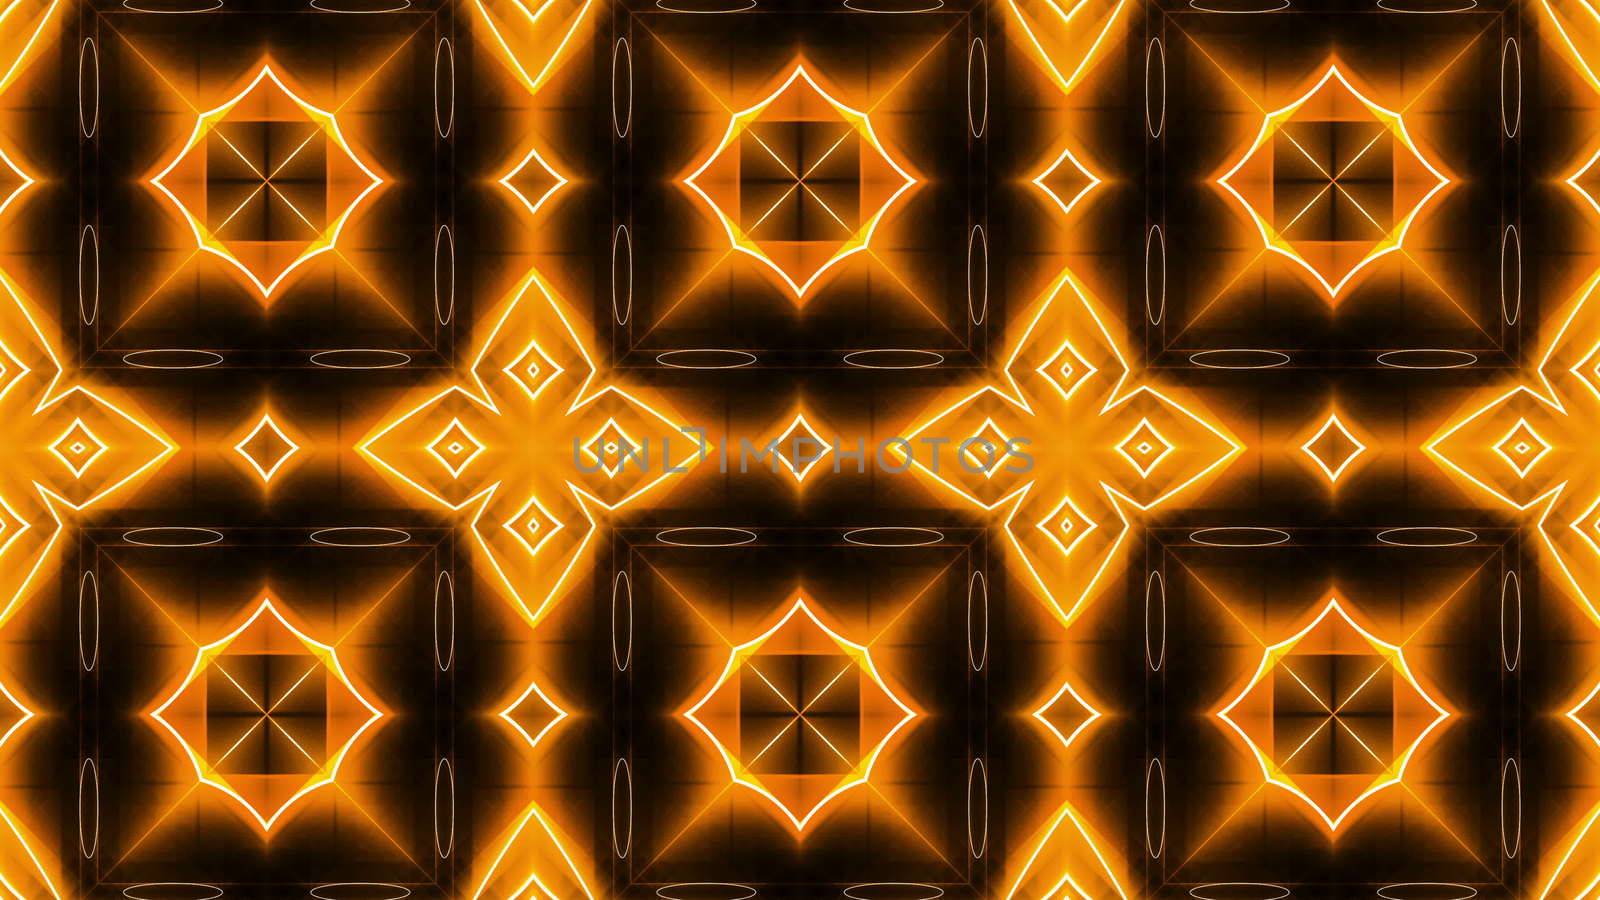 Fractal orange kaleidoscopic background. 3D rendered backdrop